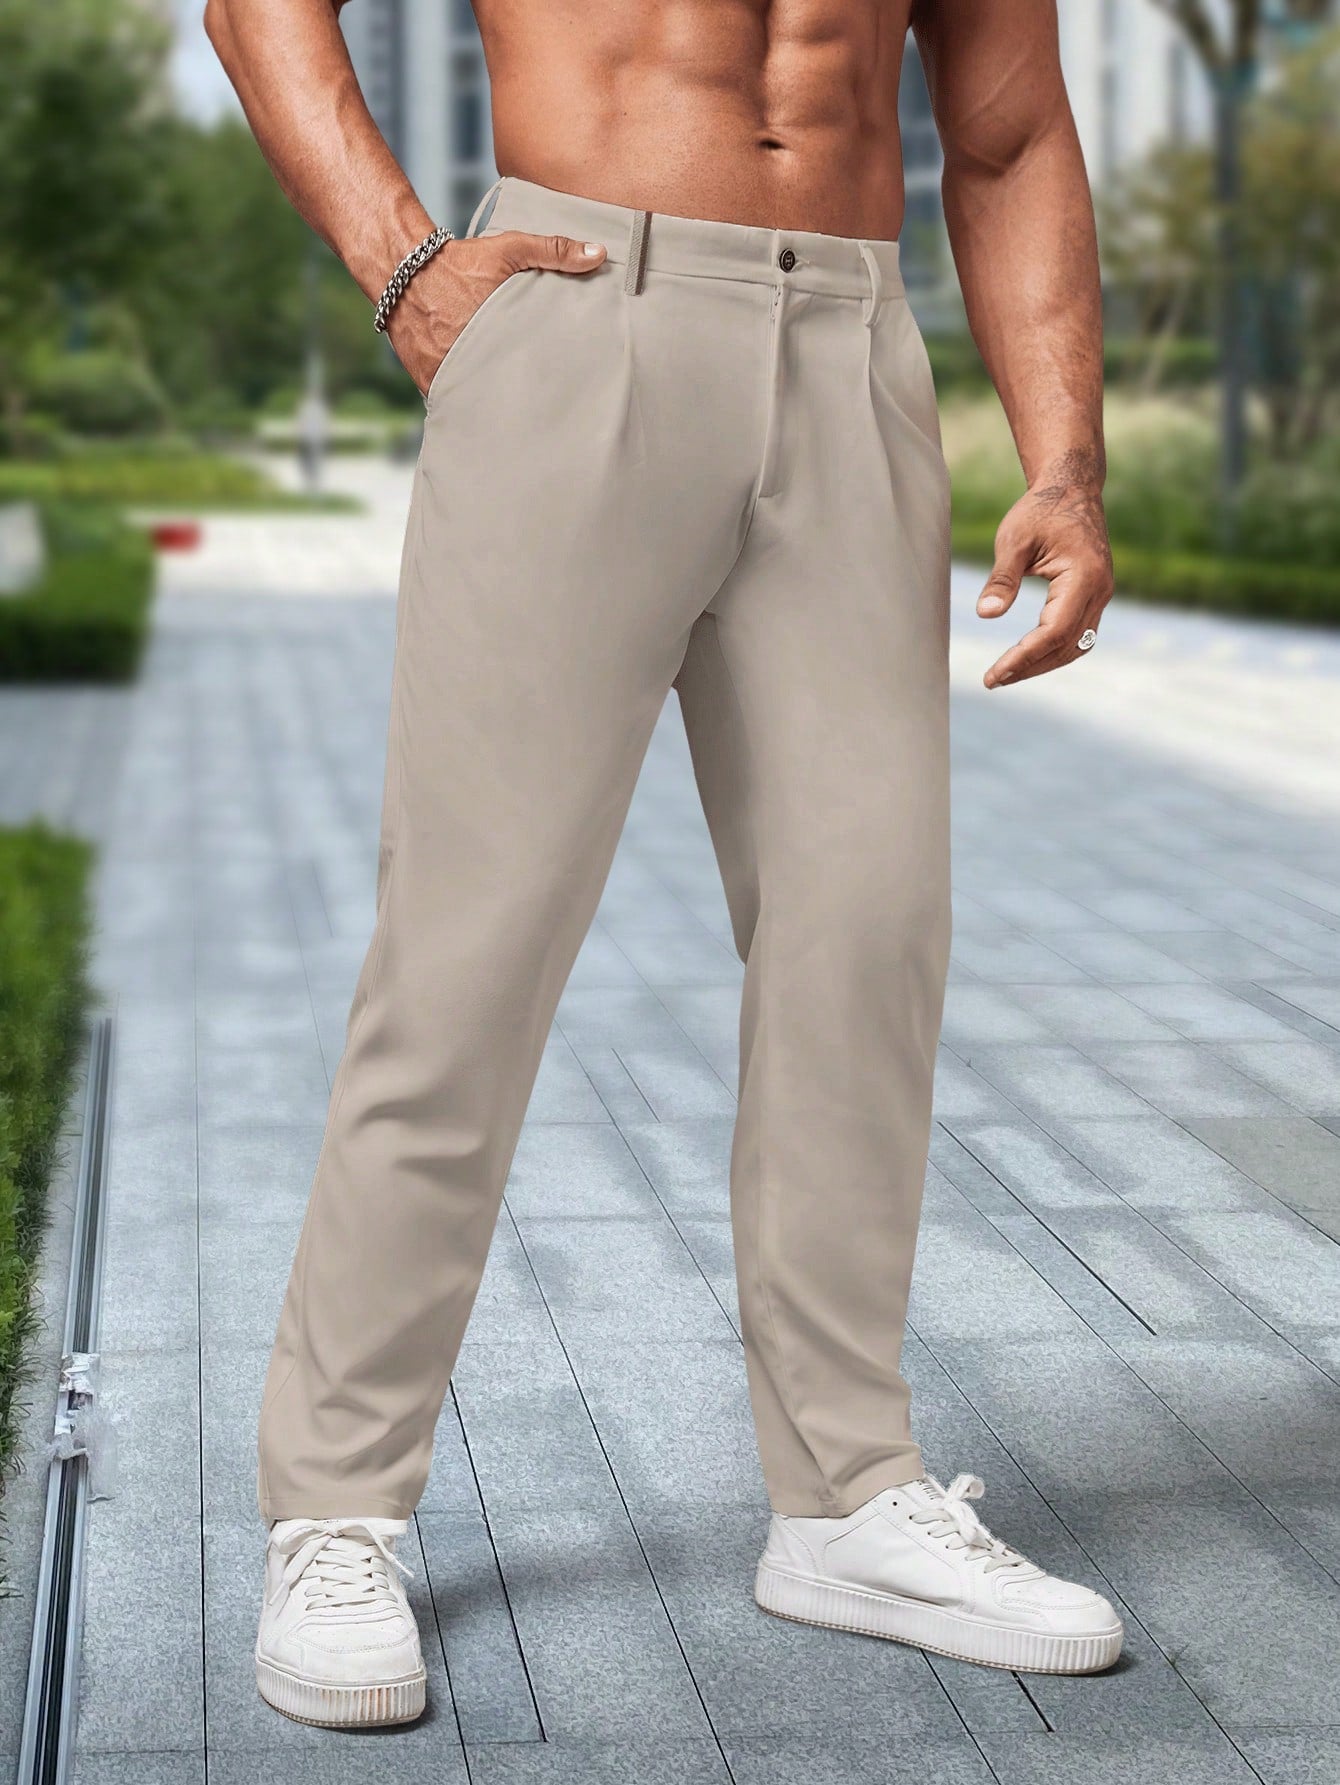 Men's Business Solid Color Suit Pants